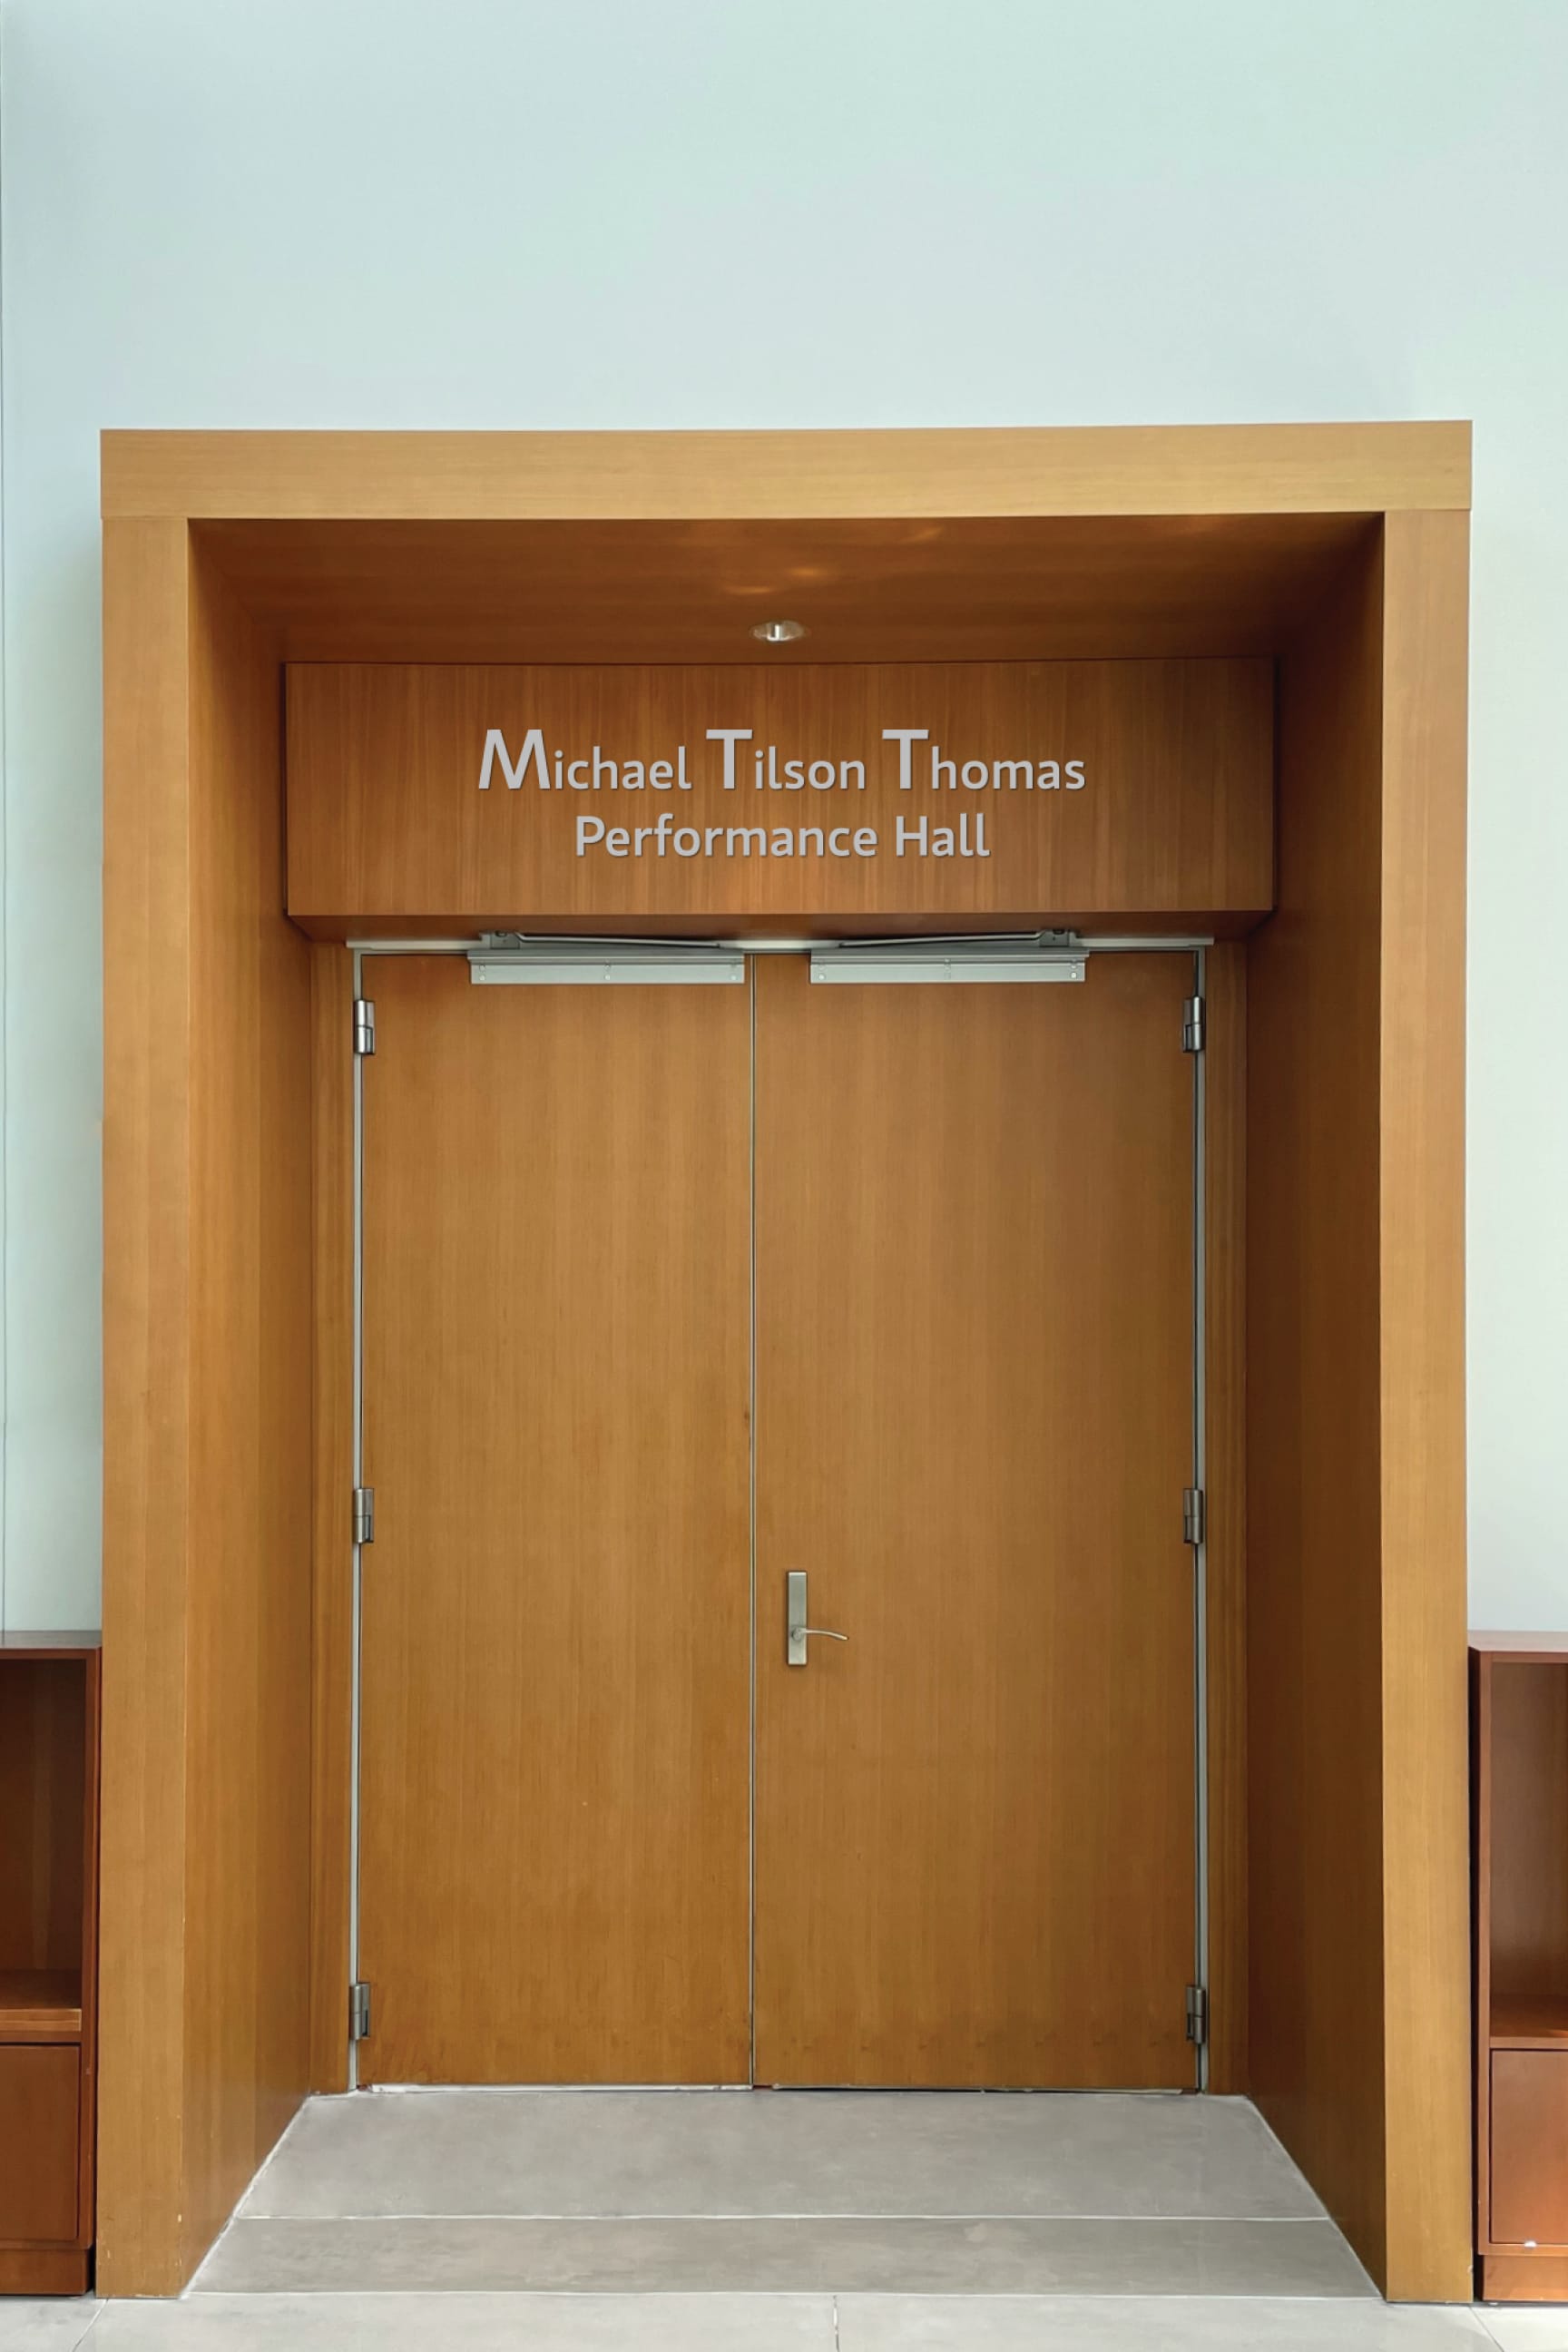 Enter the Michael Tilson Thomas Performance Hall